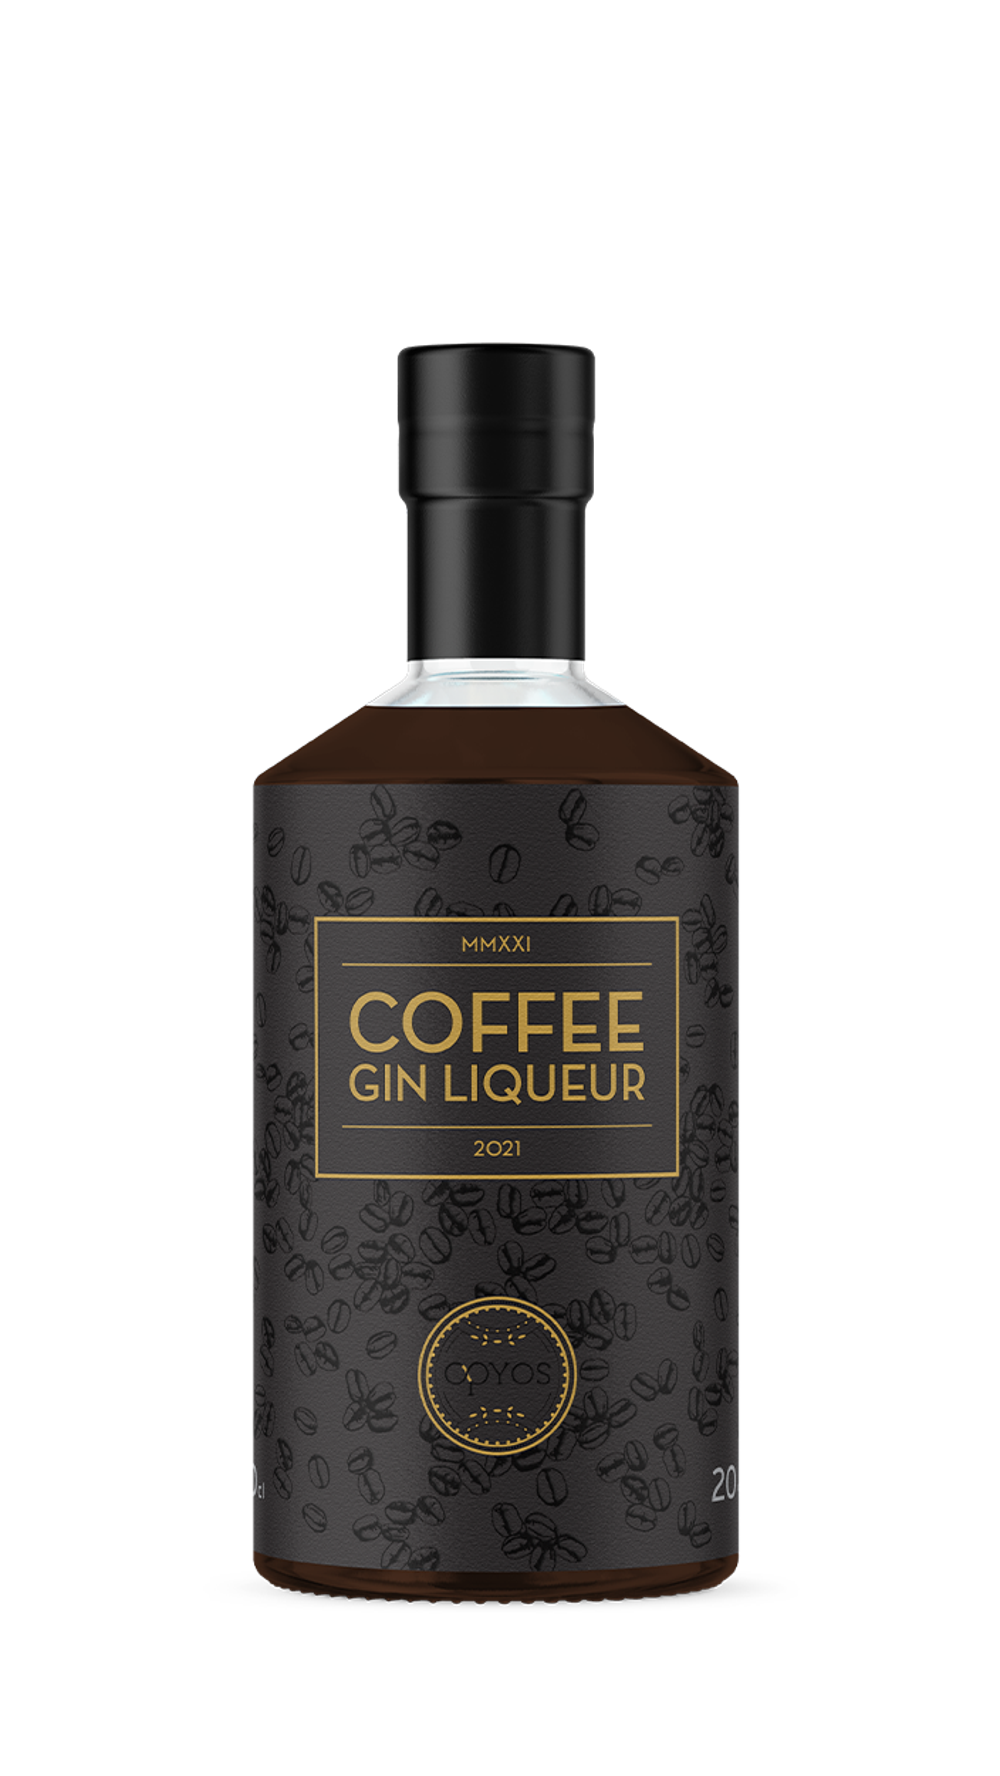 Opyos Coffee Gin Liqueur 20.0% 0.5L, Spirits